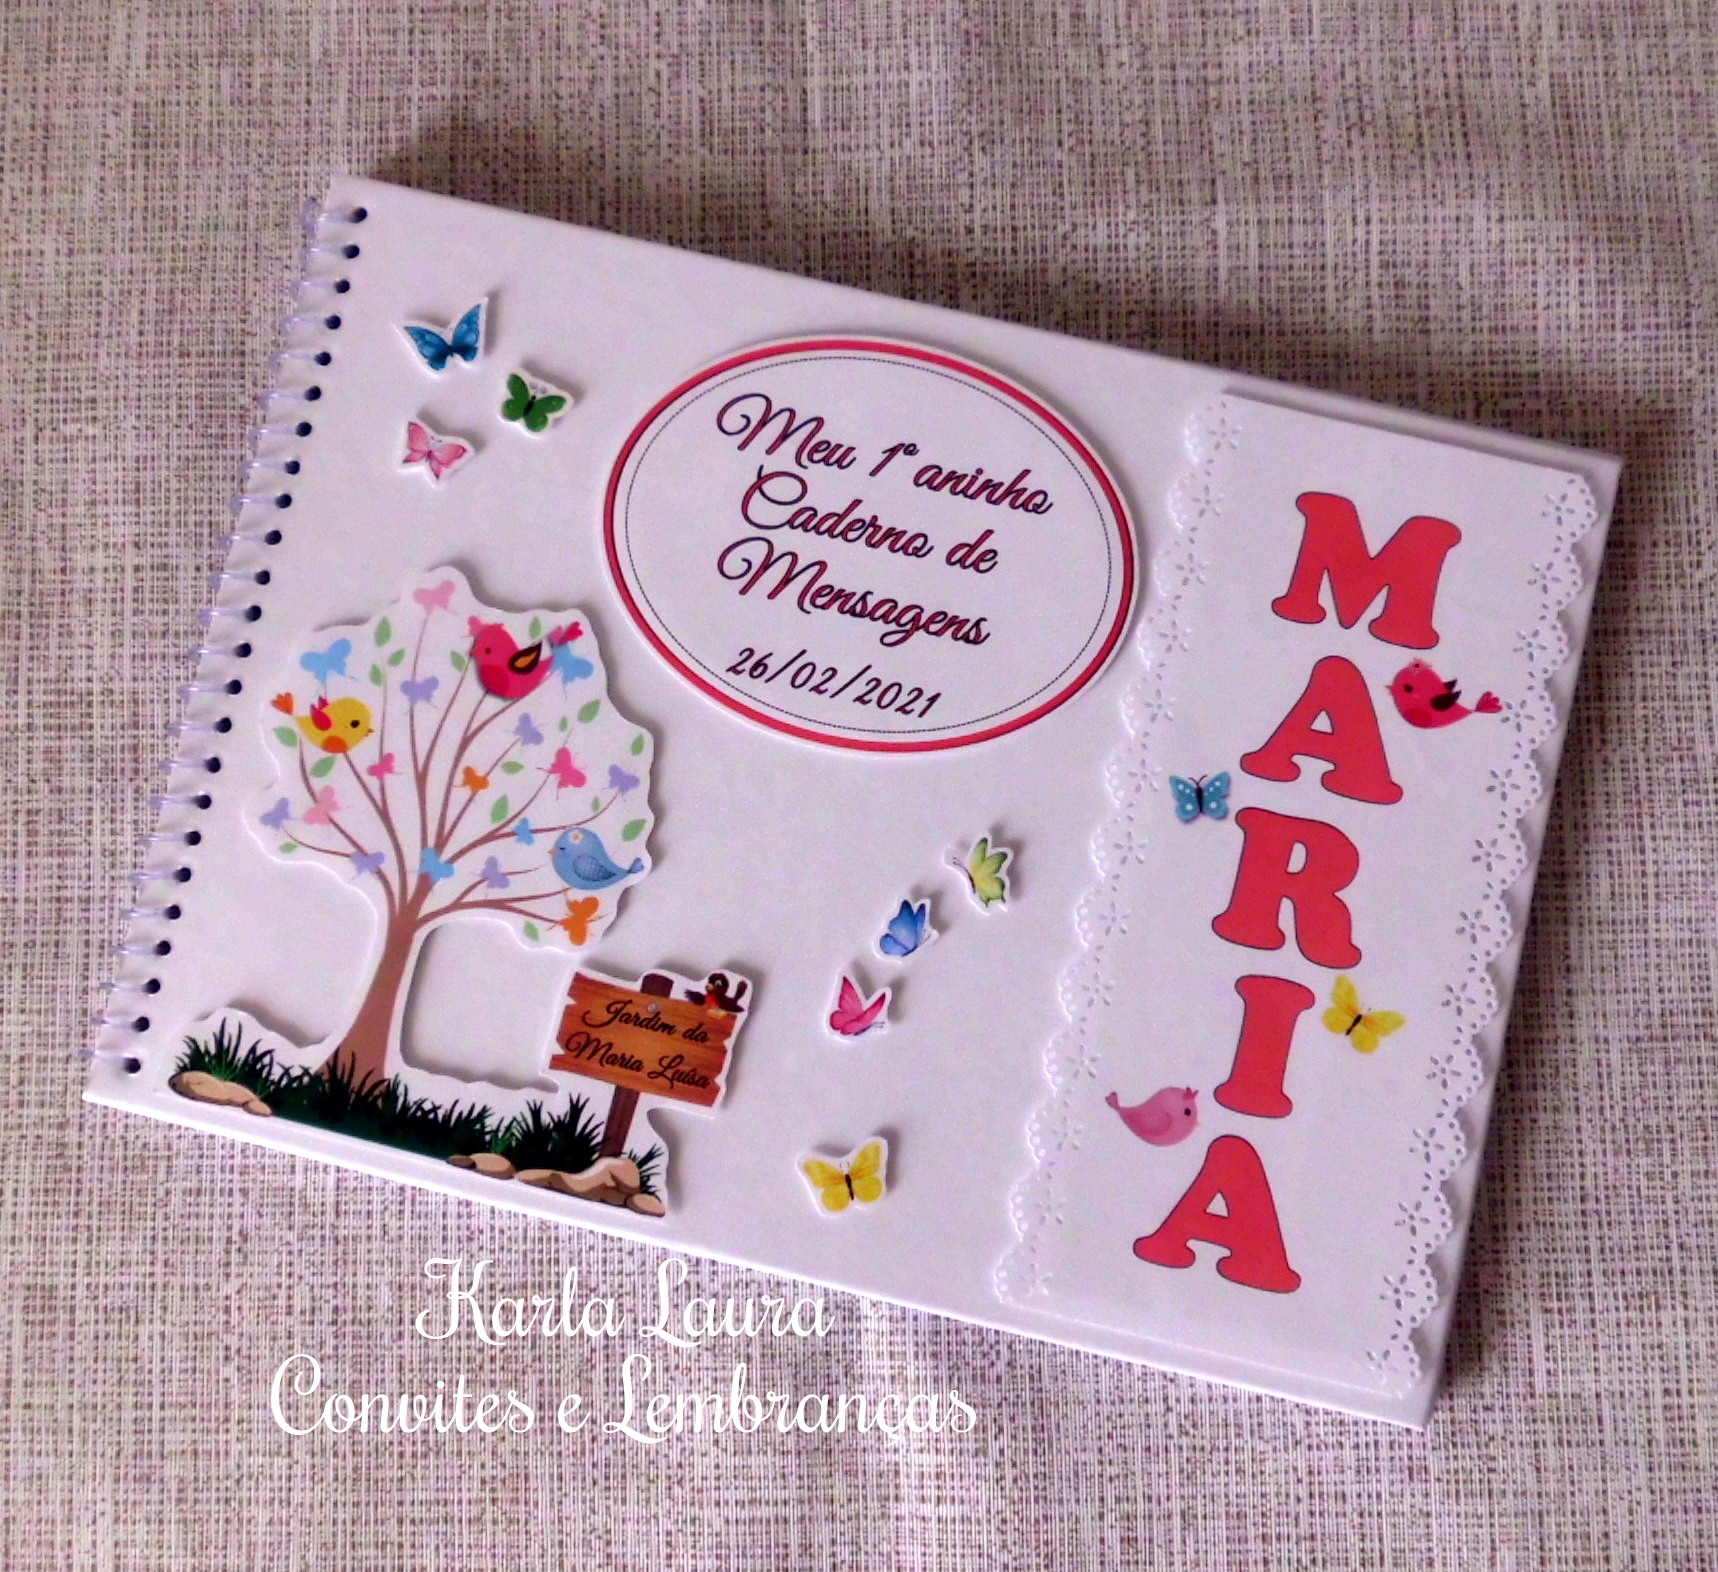 Caderno de Mensagens infantil, tema Jardim Encantado - Maria e Wanessa